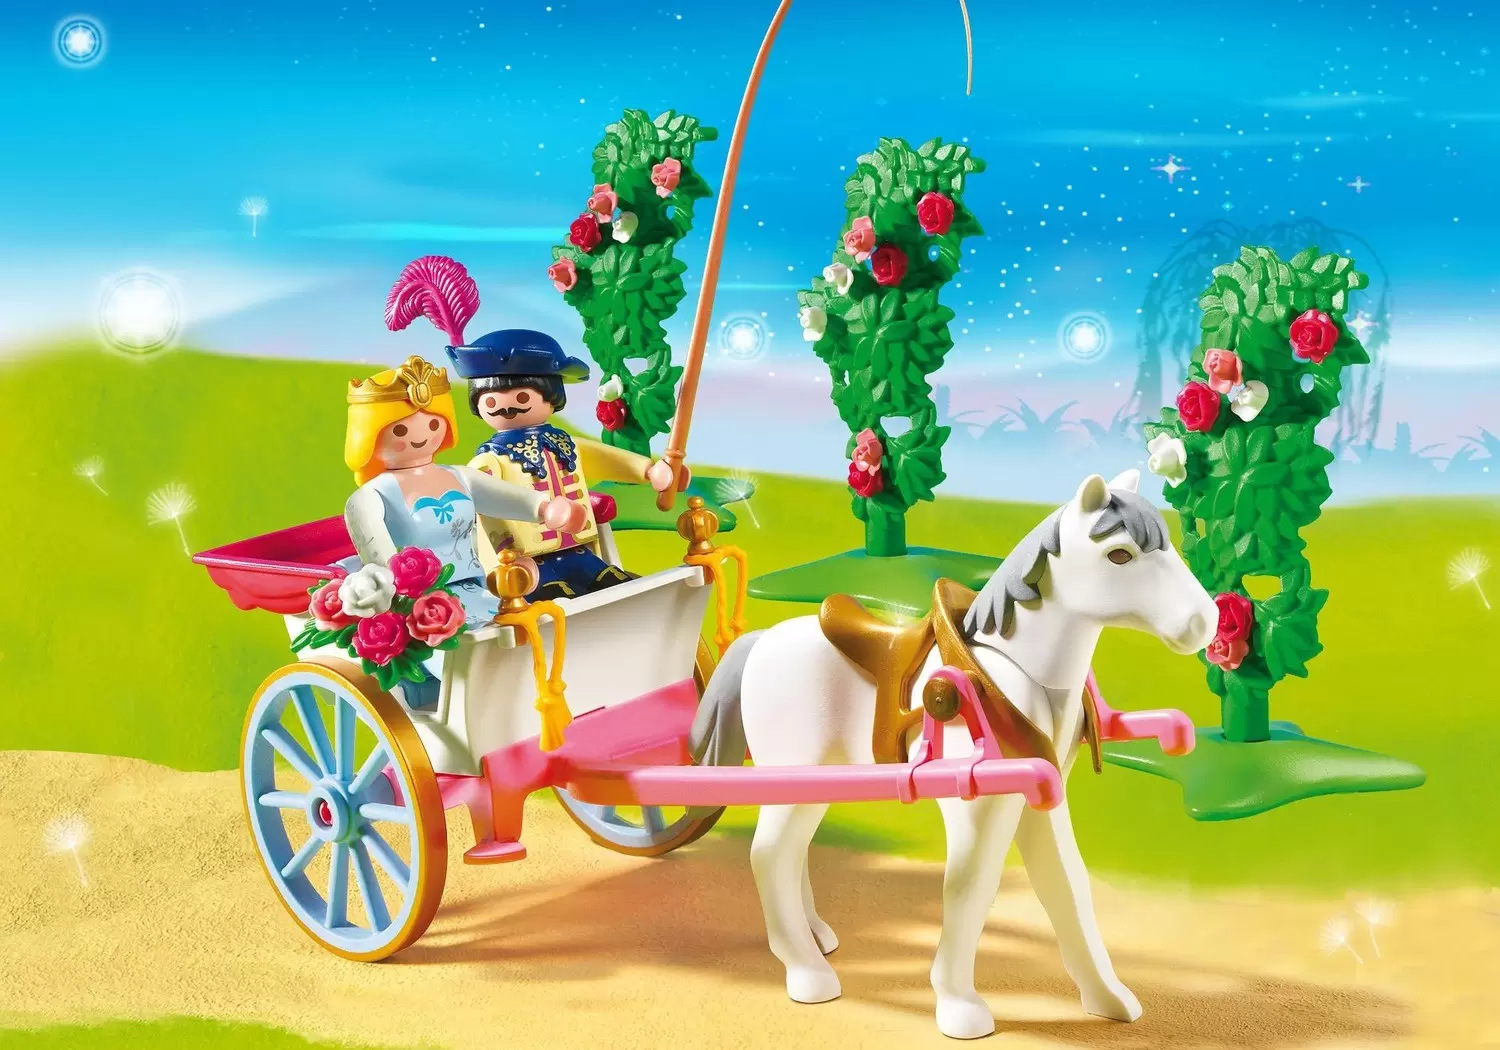 Playmobil Princess - Princess with Horse Carriage